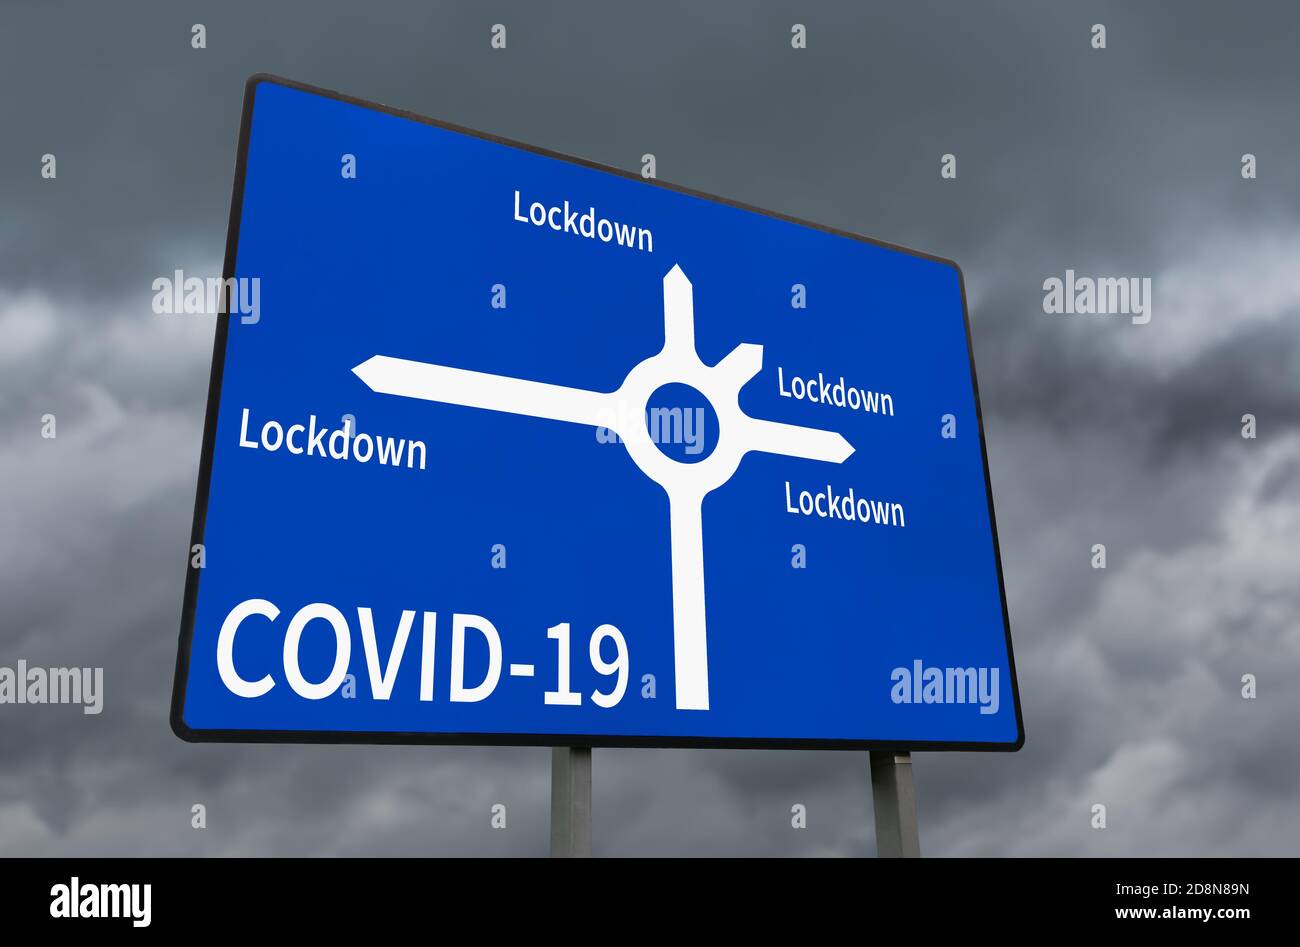 Le panneau routier illustrant toutes les régions de l'Angleterre est entièrement verrouillé à l'échelle nationale en raison de la pandémie du coronavirus COVID-19. Concept verrouillé. Banque D'Images